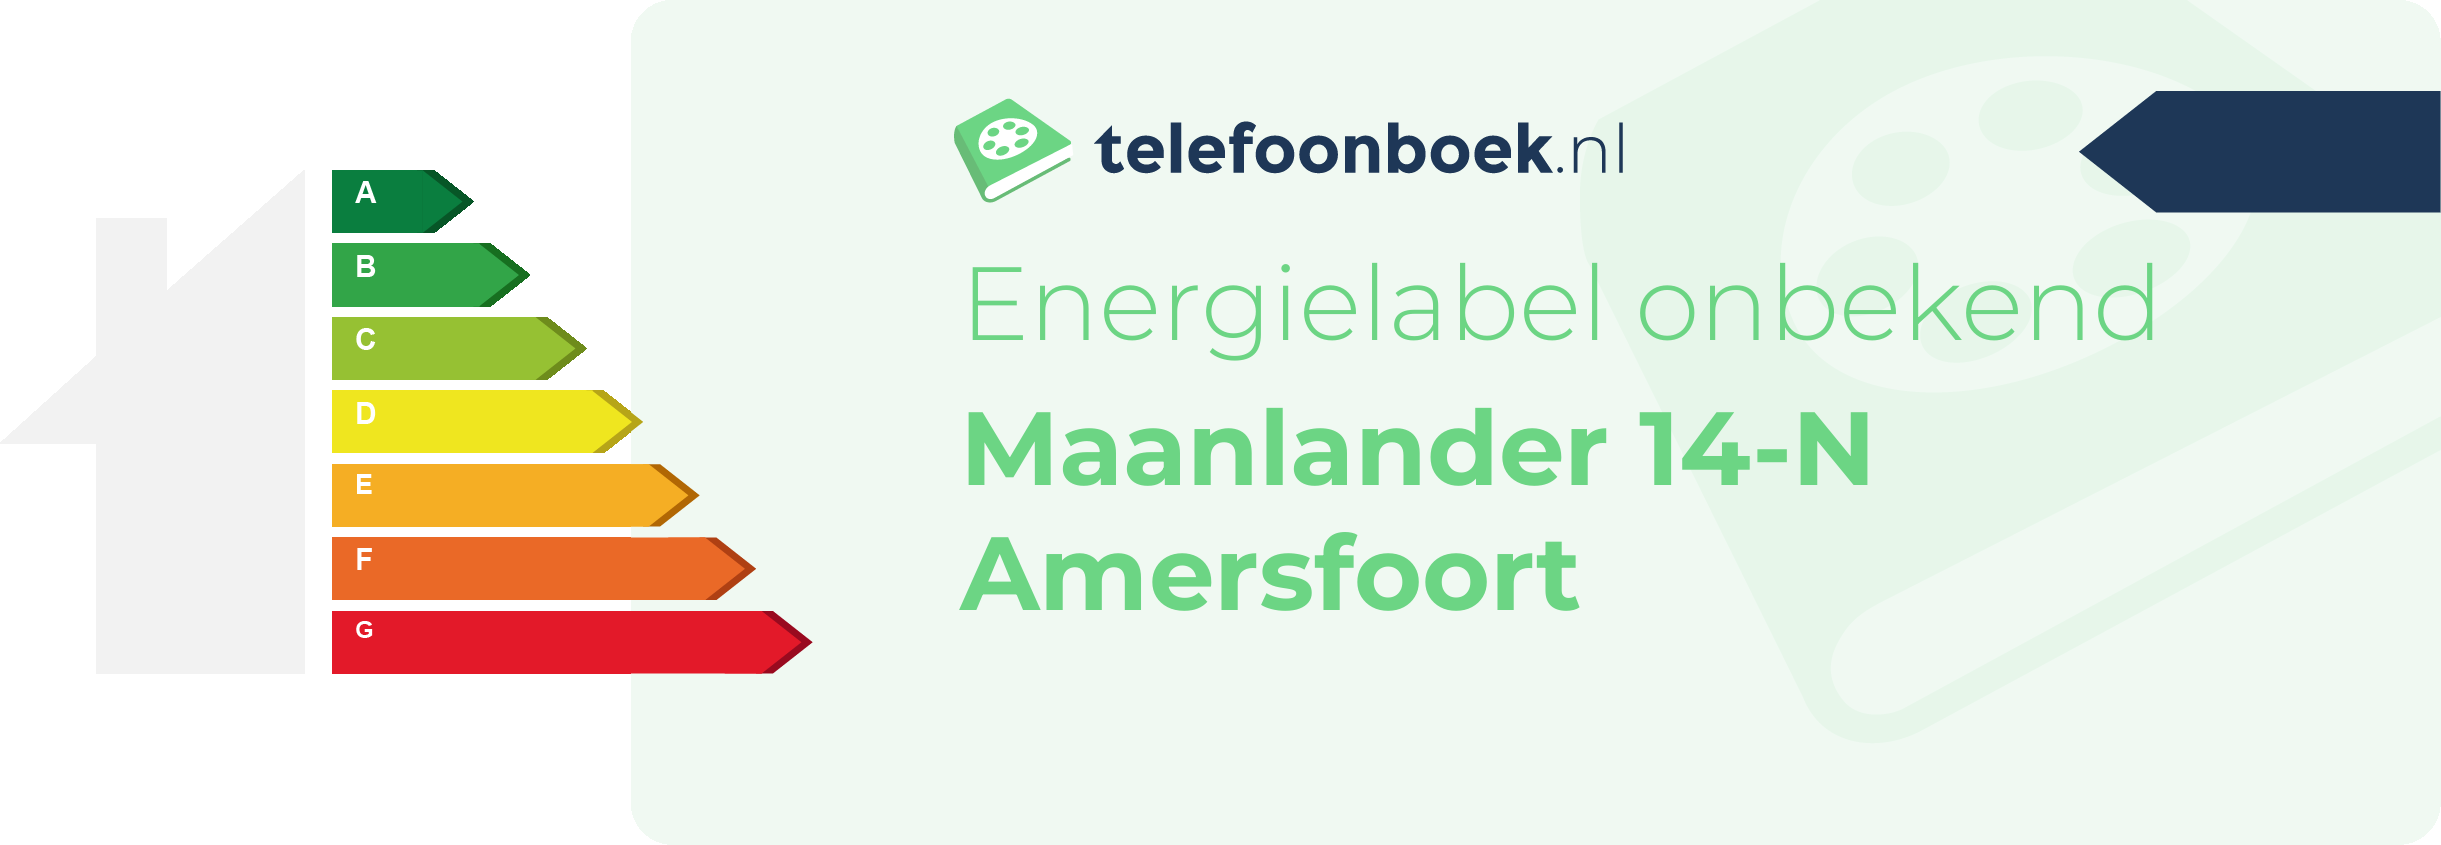 Energielabel Maanlander 14-N Amersfoort